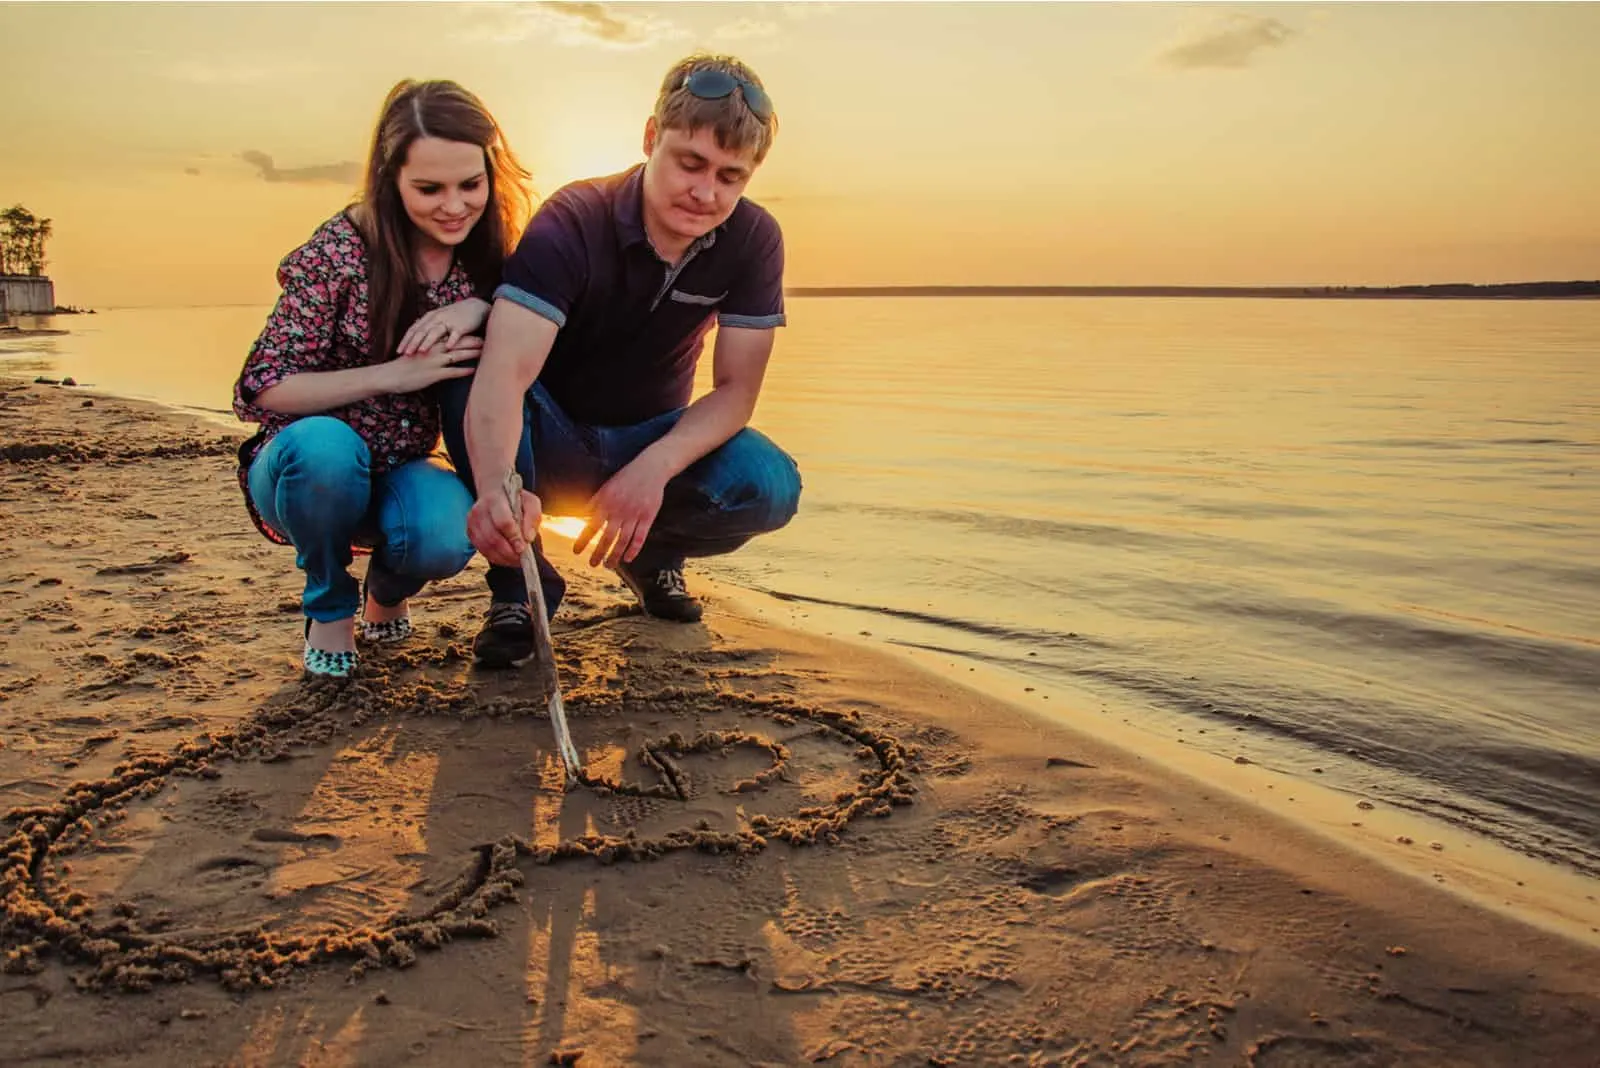 Ein verliebtes Paar zieht ein Herz an einen Sandstrand